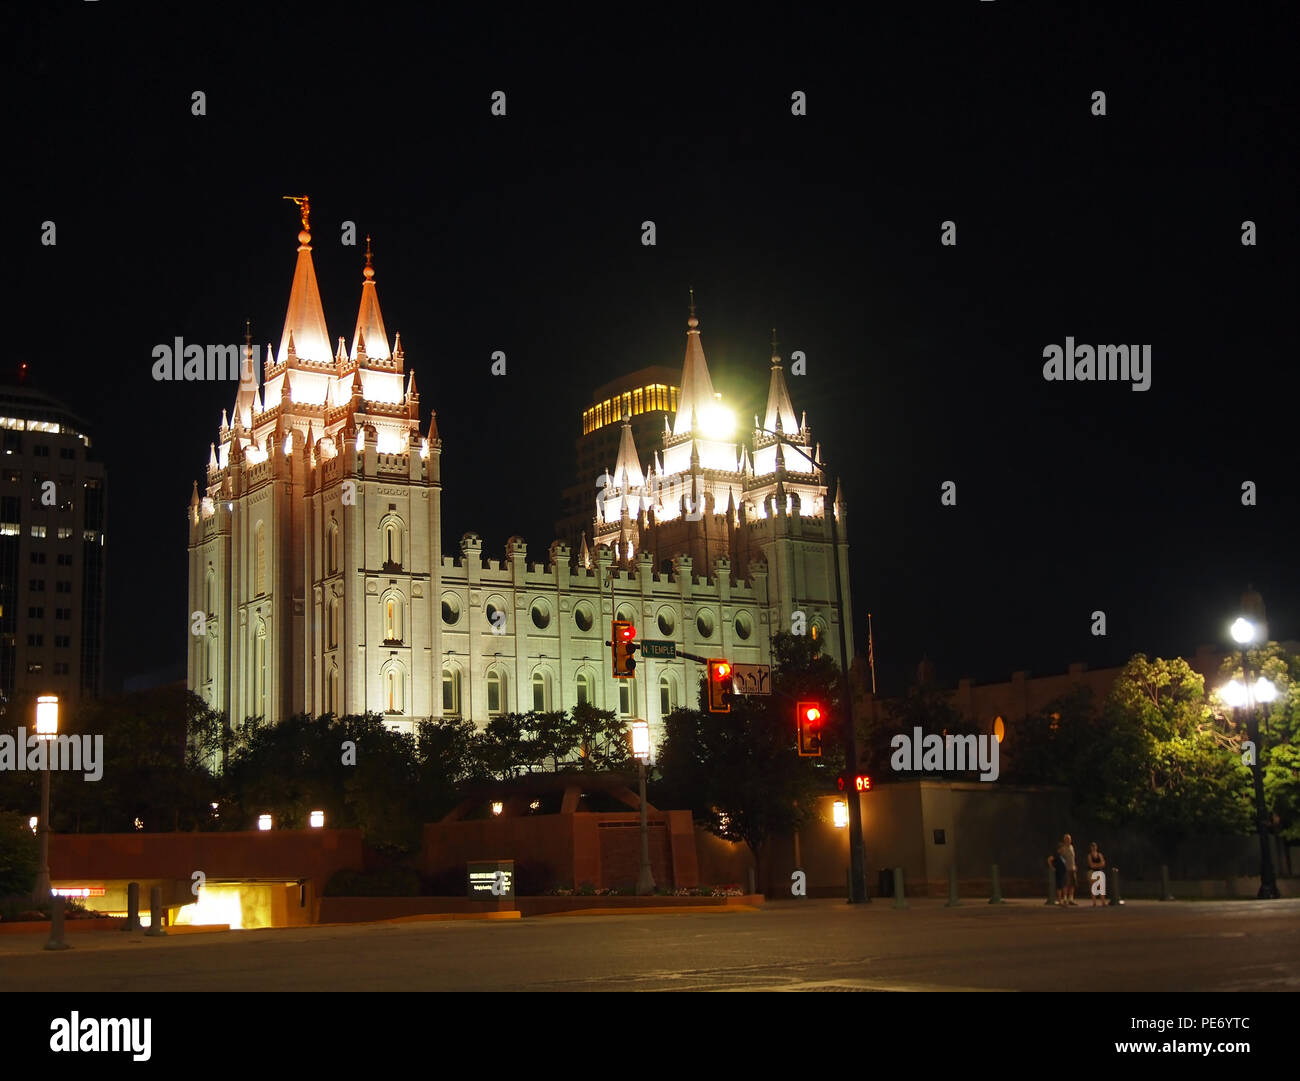 La chiesa Mormone Salt Lake Temple al Temple Square nel centro cittadino di Salt Lake City, Utah su una notte d'estate. Foto Stock